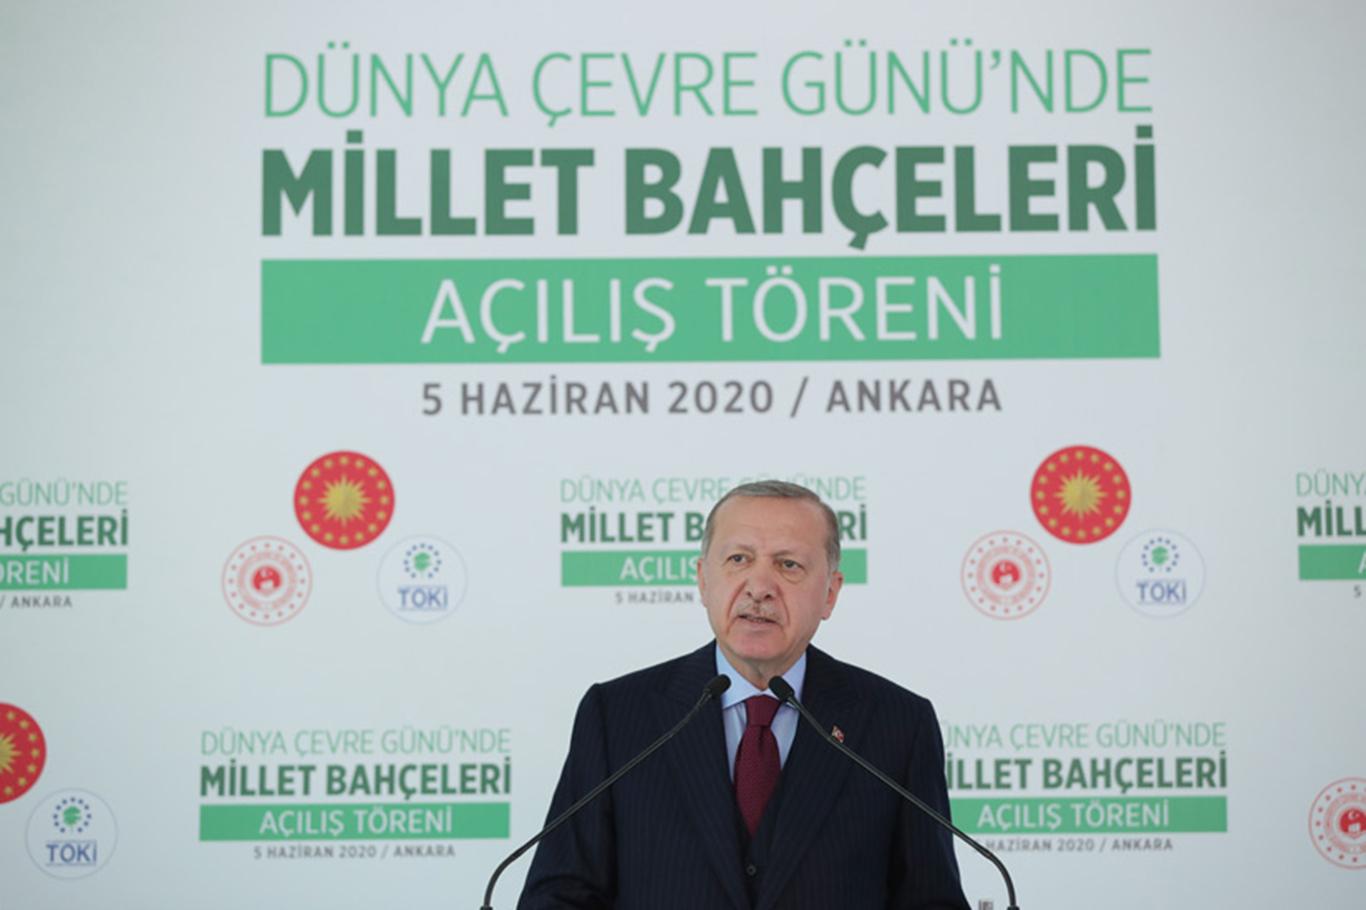 Cumhurbaşkanı Erdoğan: "81 vilayetimizin tamamını millet bahçeleriyle donatmış olacağız"